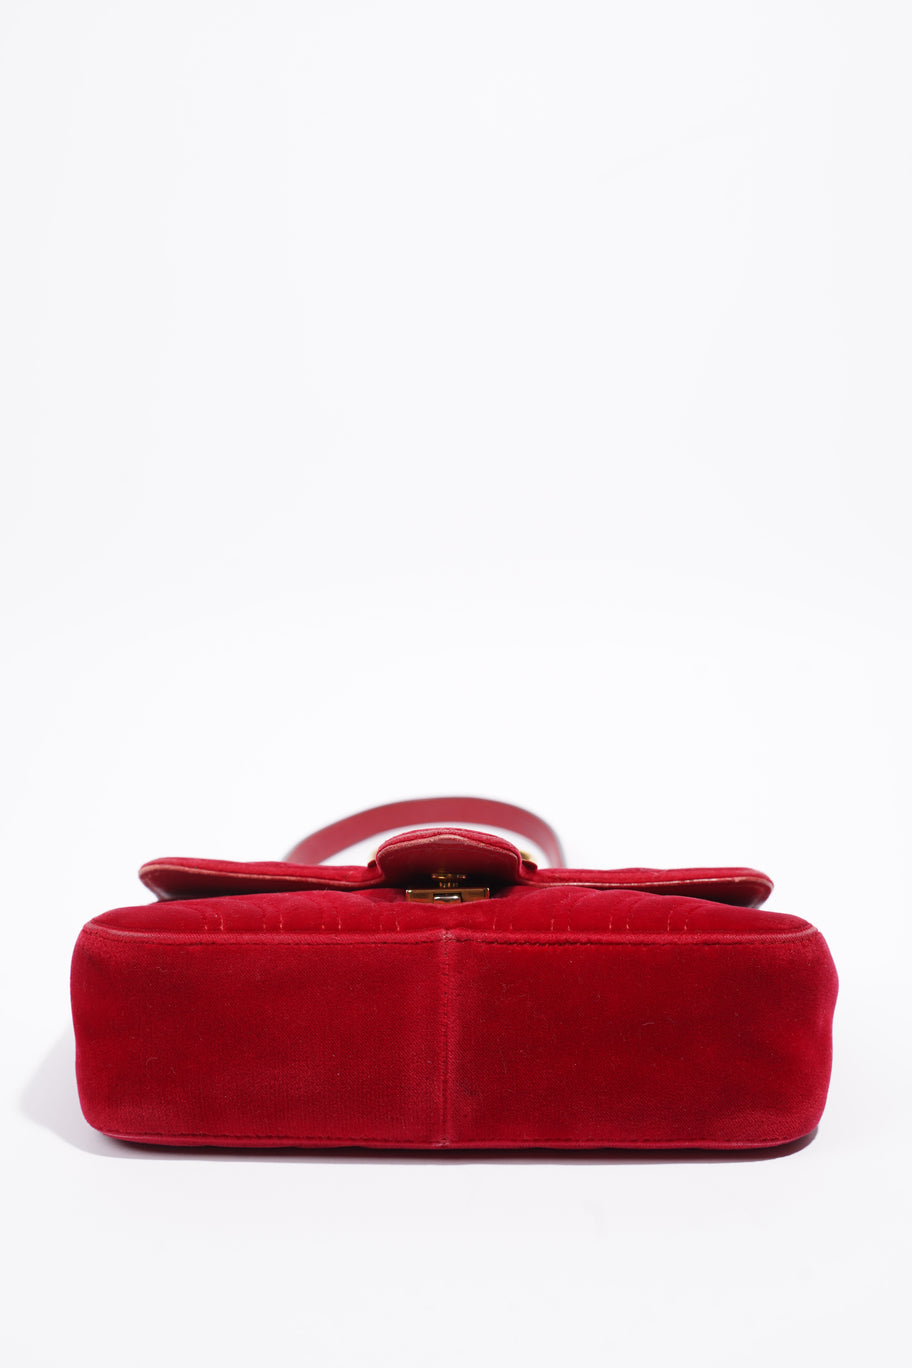 GG Marmont Bag Red Velvet Mini Image 6